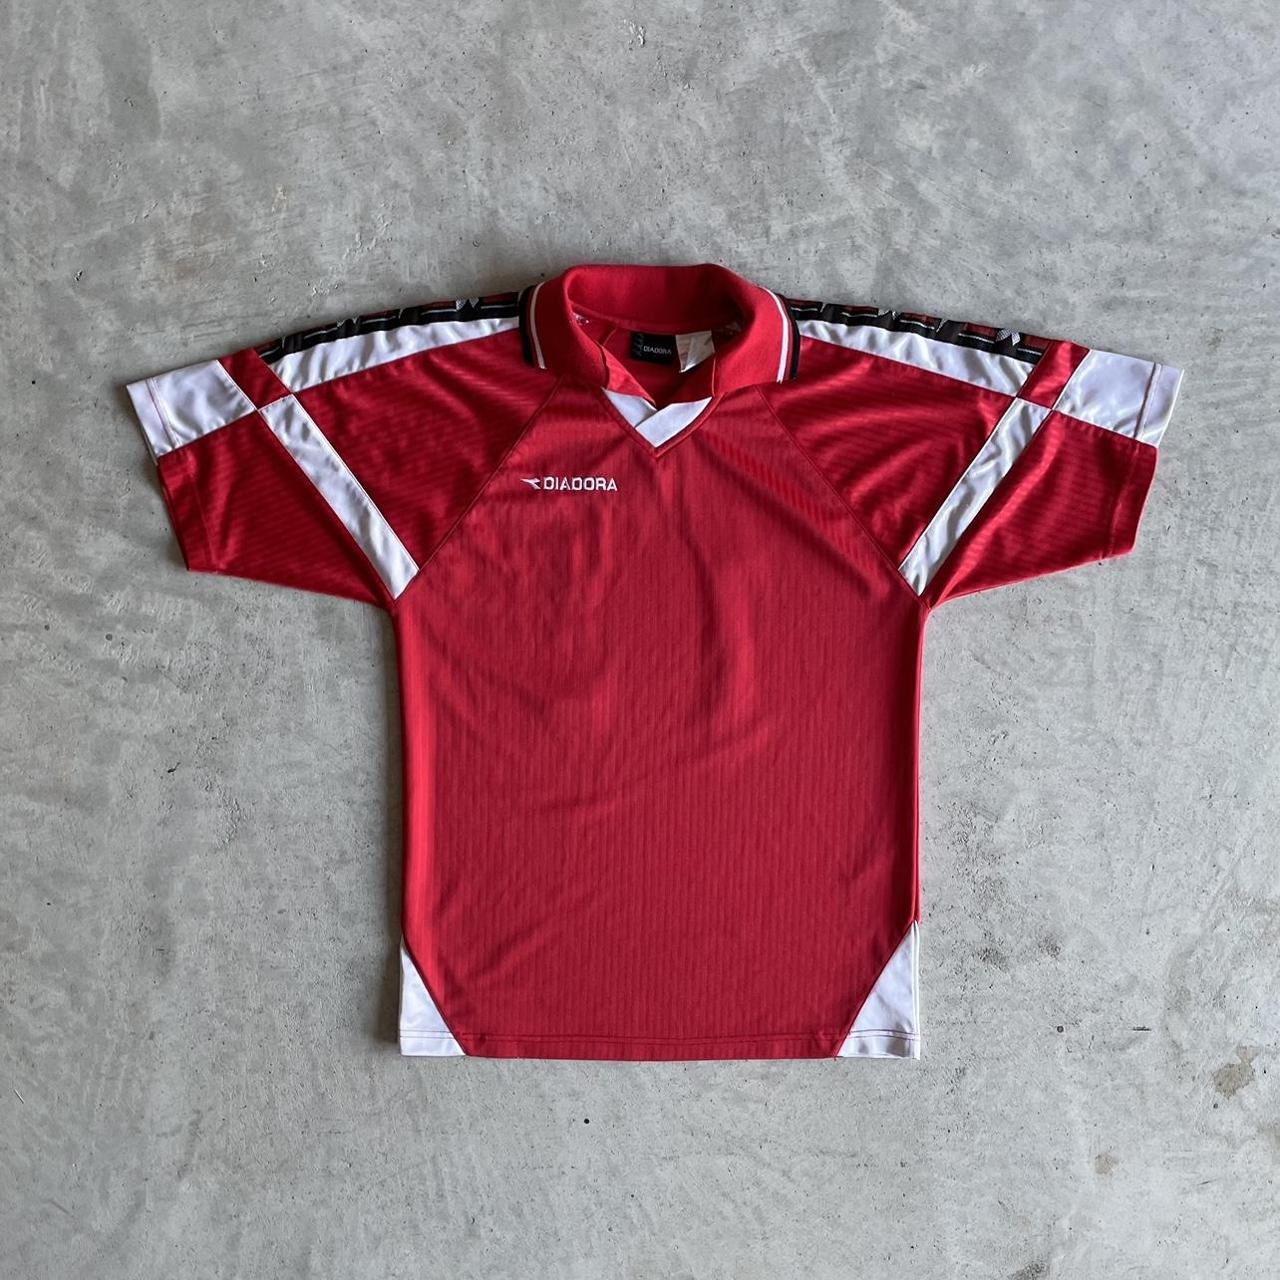 Diadora Men's Red and White T-shirt | Depop